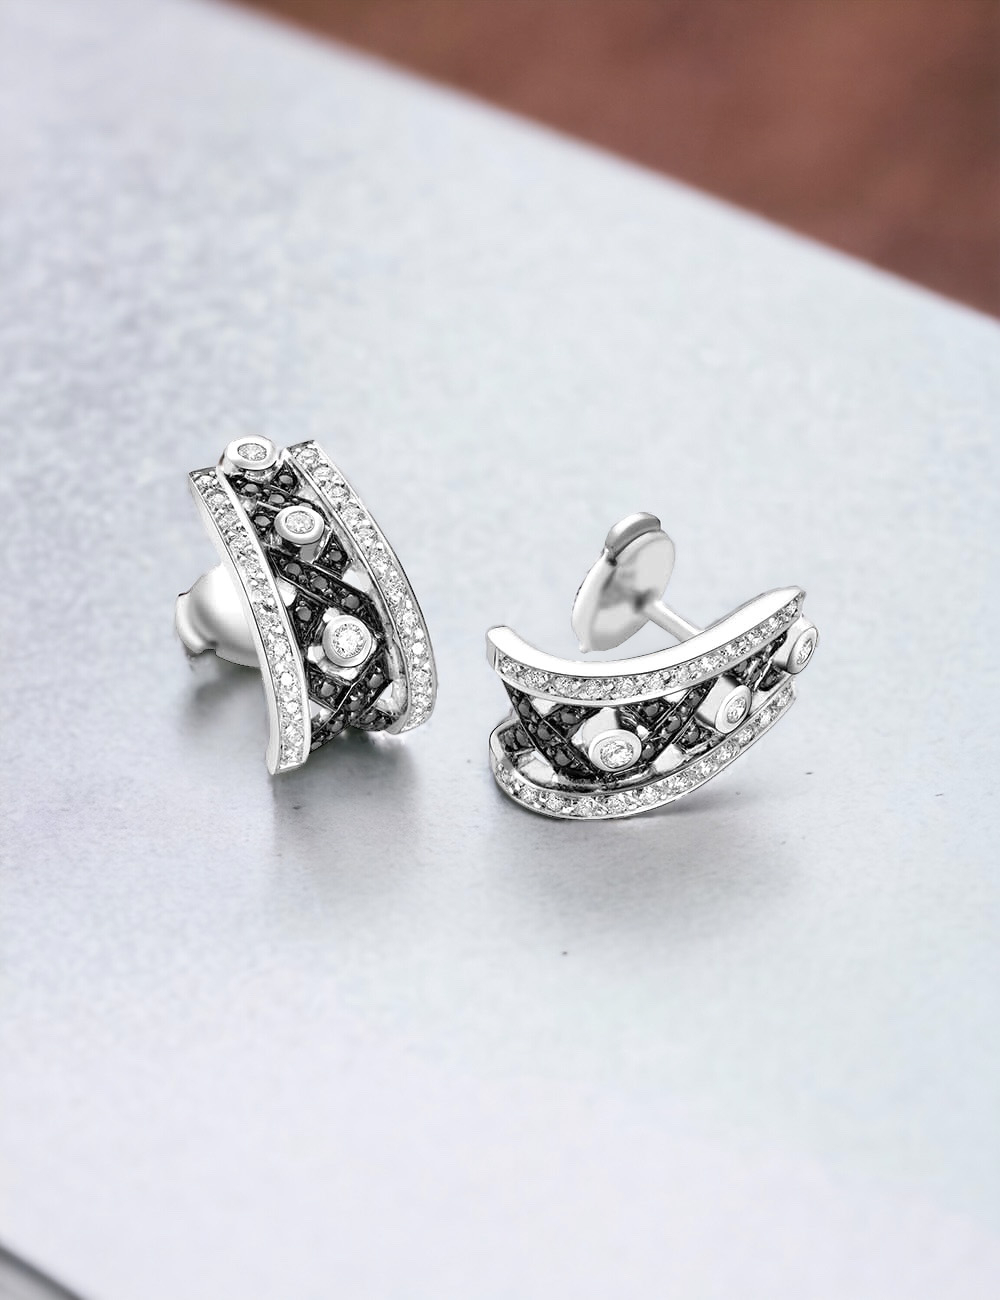 Boucles d'oreilles BlackLight Rock de D.Bachet avec diamants noirs et blancs, symbole d'audace.